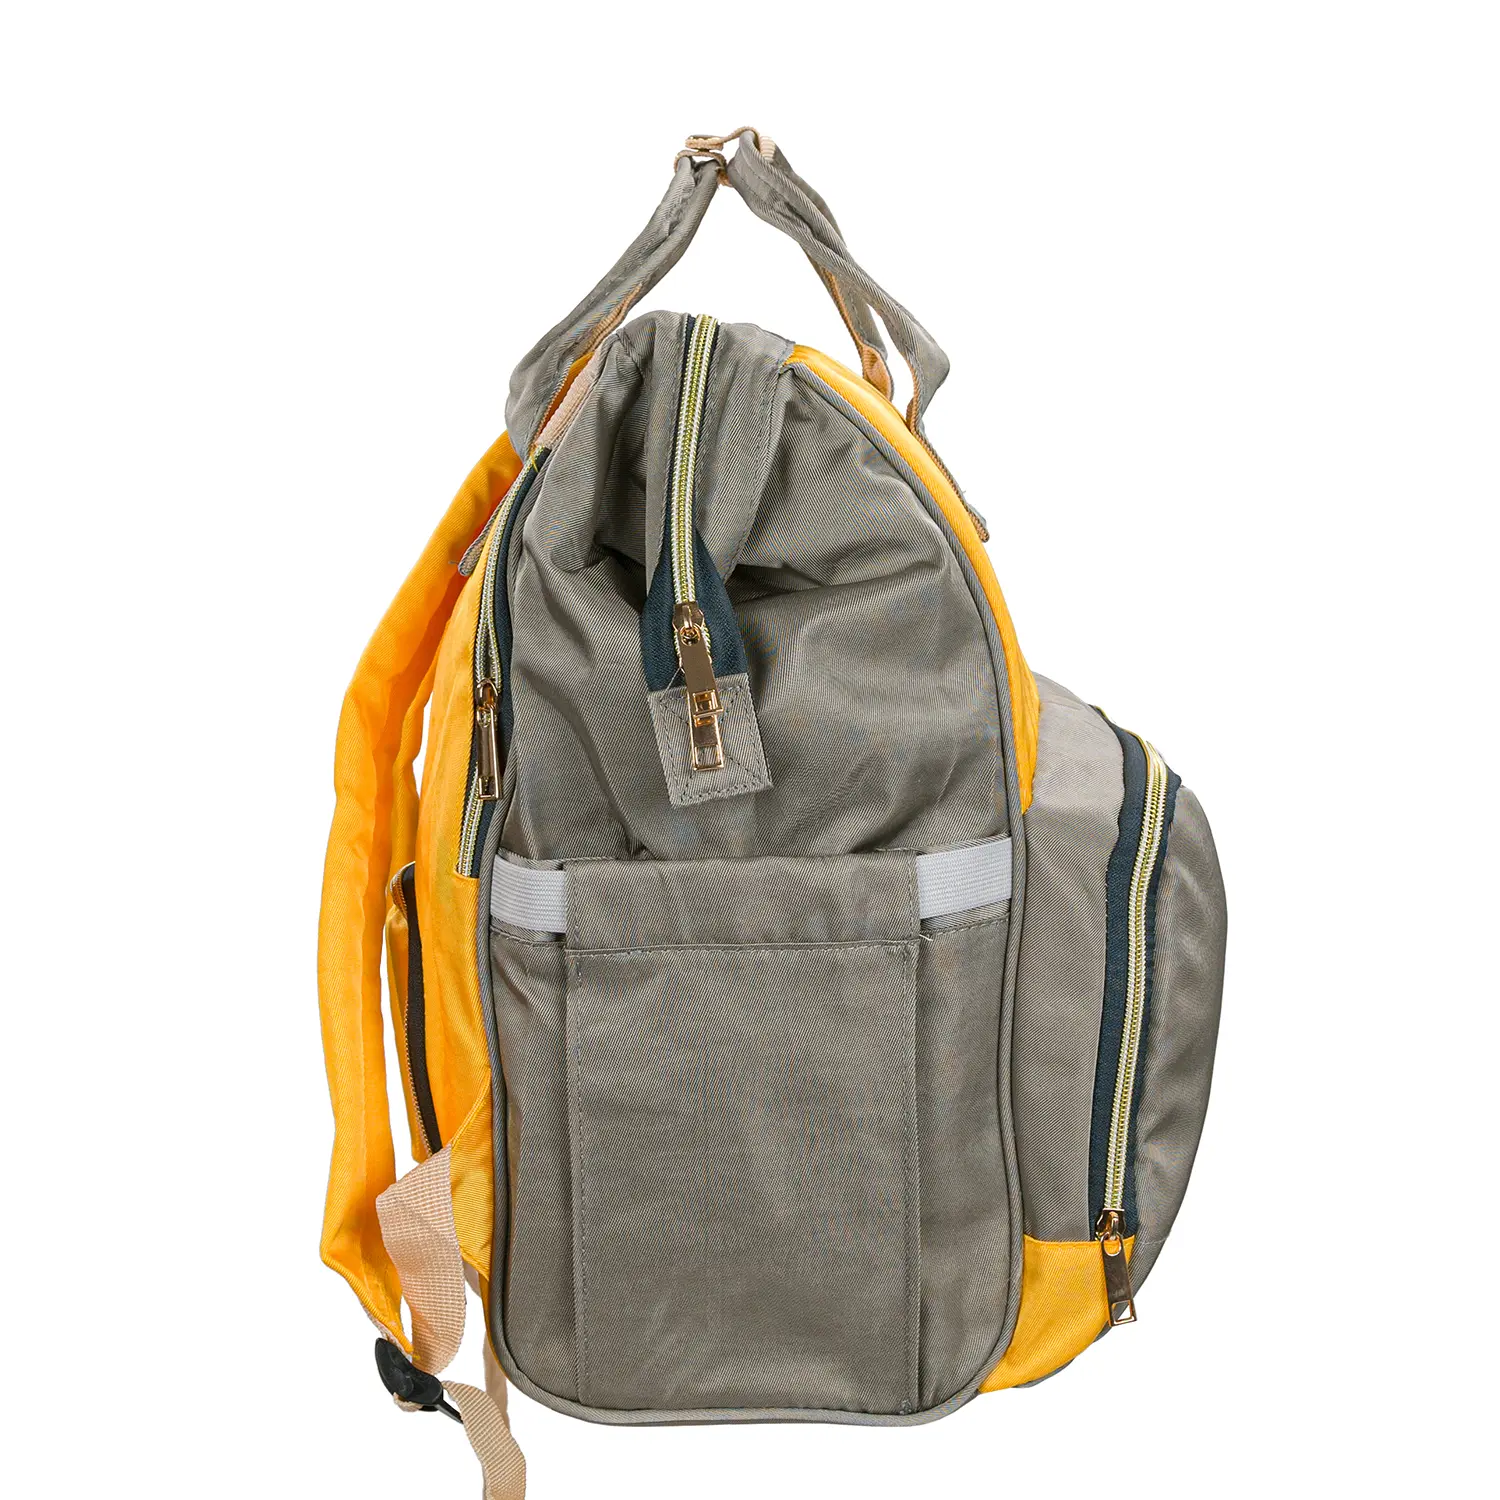 Pelenkázó hátizsák, hátitáska szürke-sárga színben (ST-MB-JA1911-118-GRAY-YELLOW) pelenkázótáska